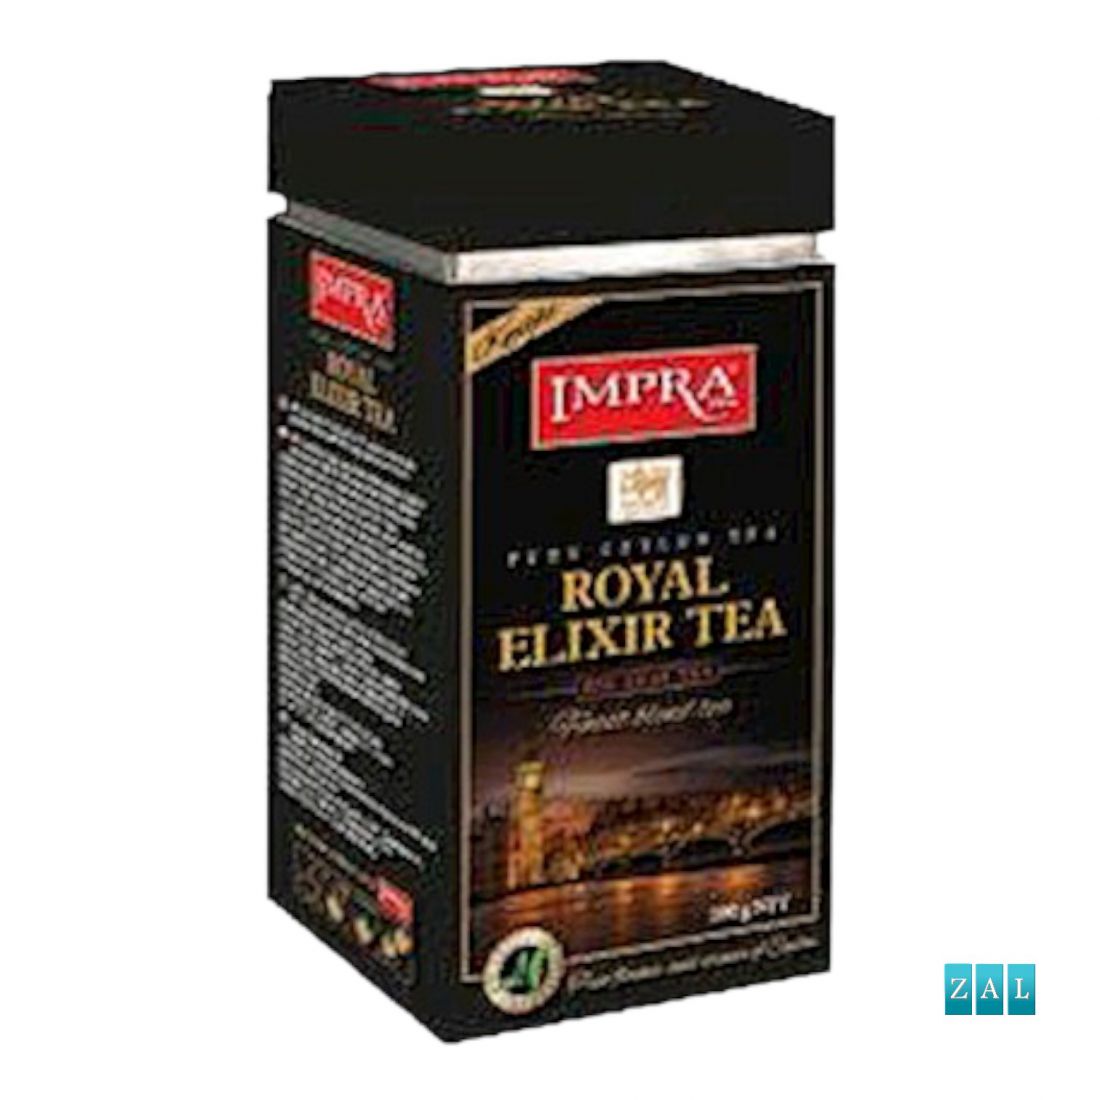 IMPRA Ceylon Royal Elixir Knight Tea 200g